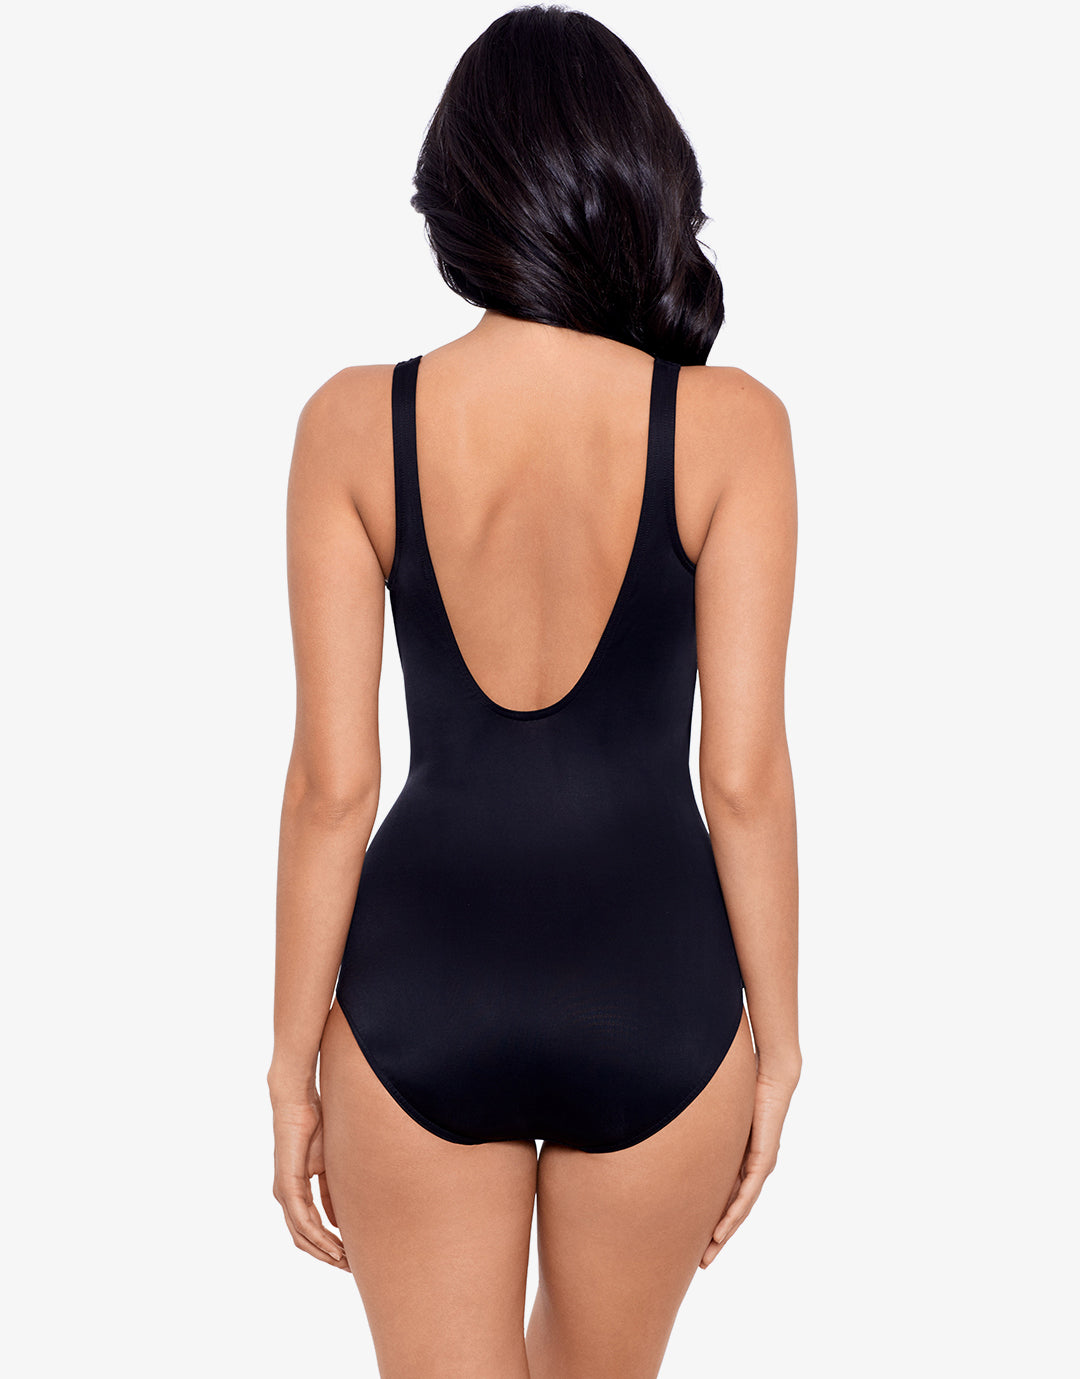 Must Haves Oceanus Swimsuit - Black - Simply Beach UK